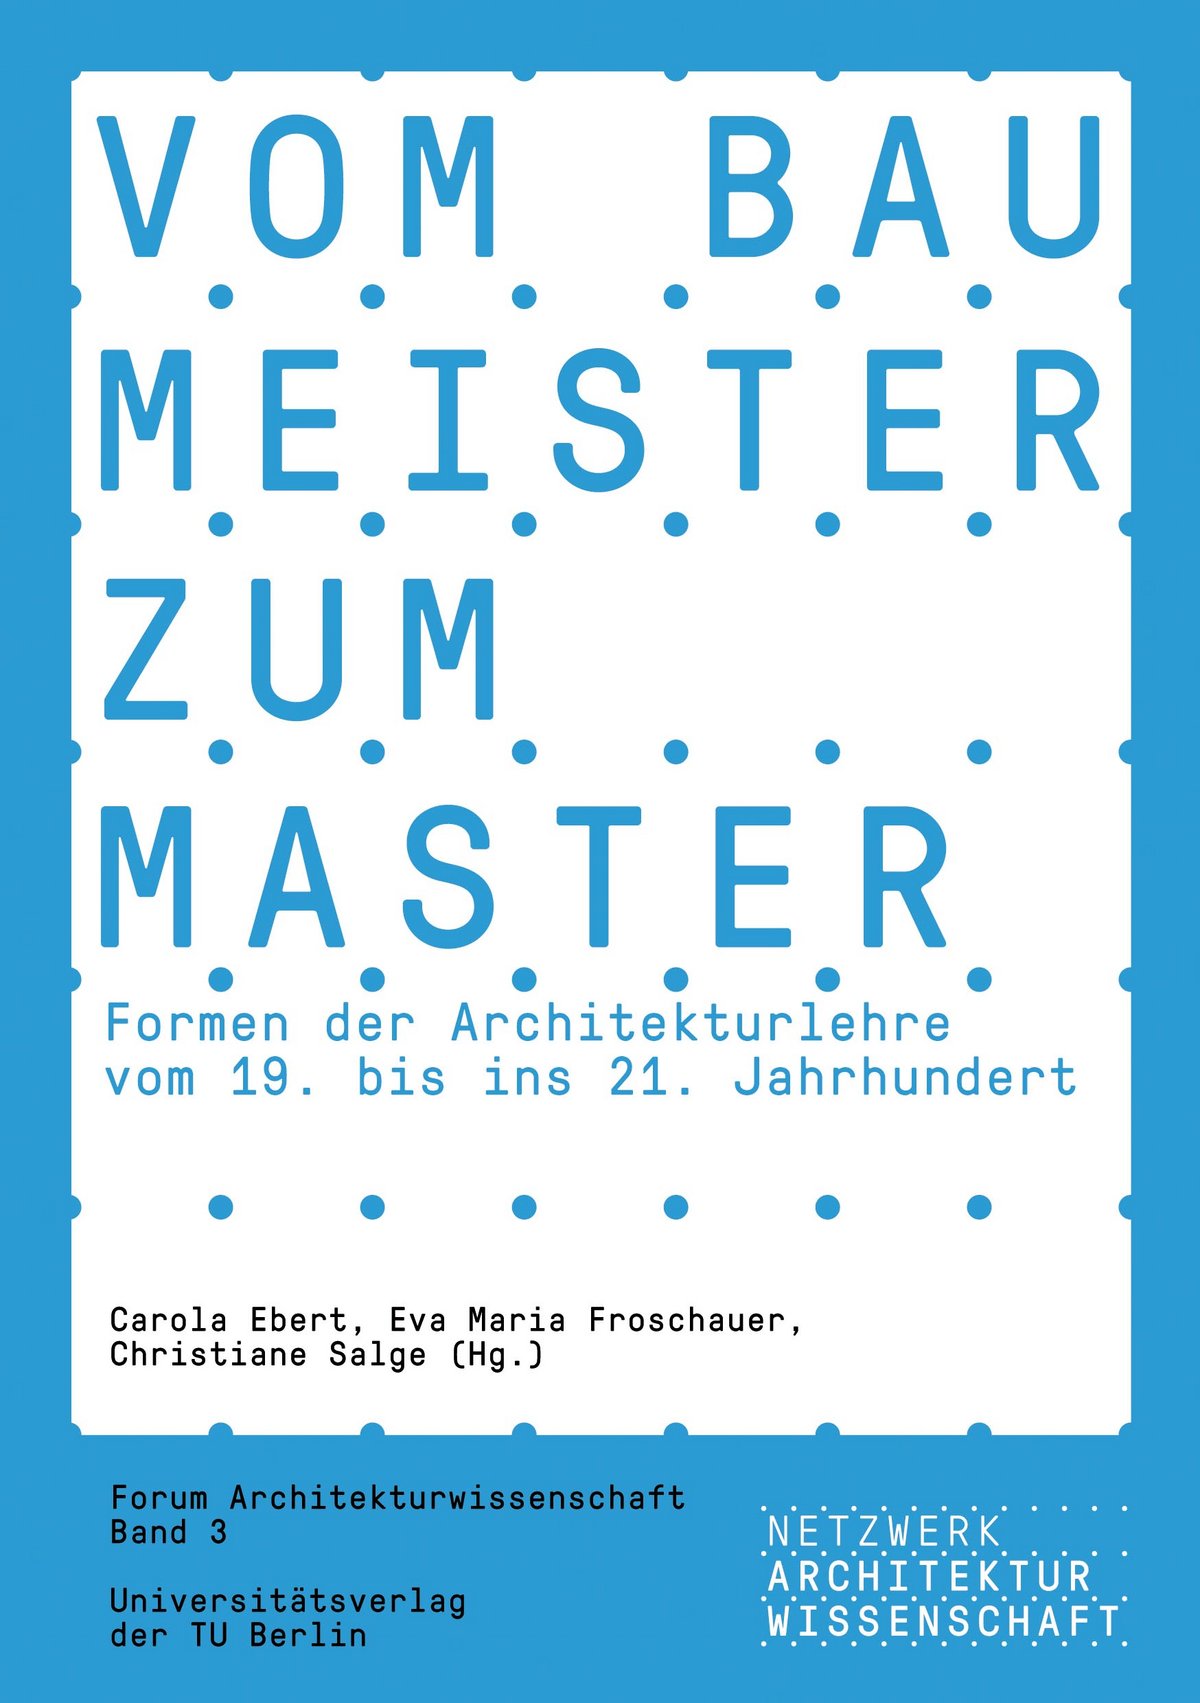 Der Tagungsband versammelt Beiträge des 3. Forums Architekturwissenschaft zum Thema der historischen und gegenwärtigen Architekturausbildung